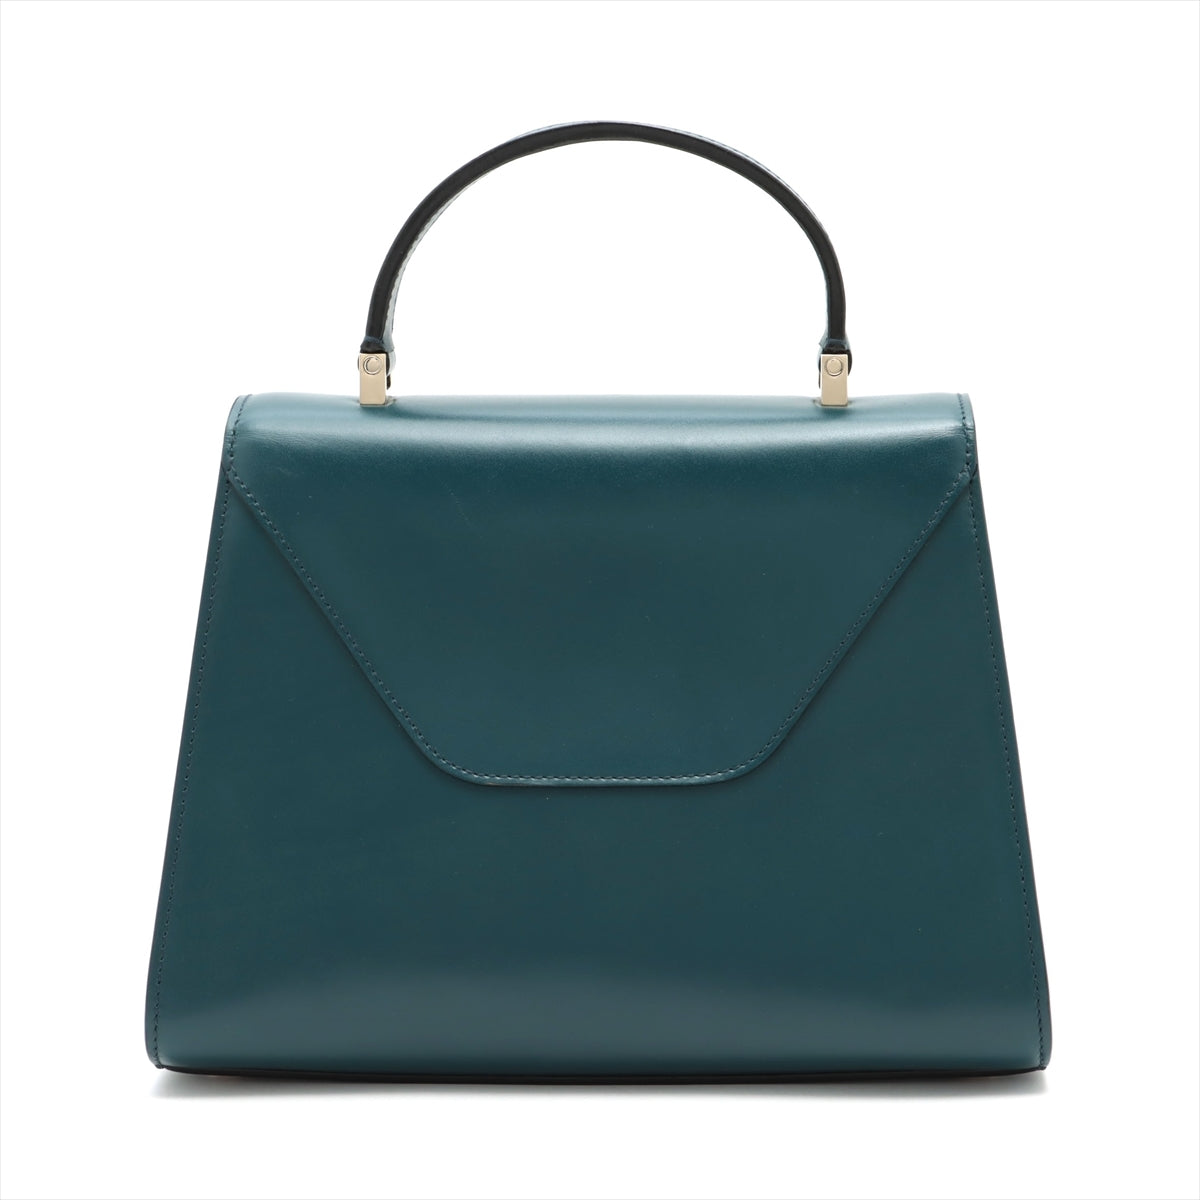 Valextra Iside Leather 2way handbag Multicolor